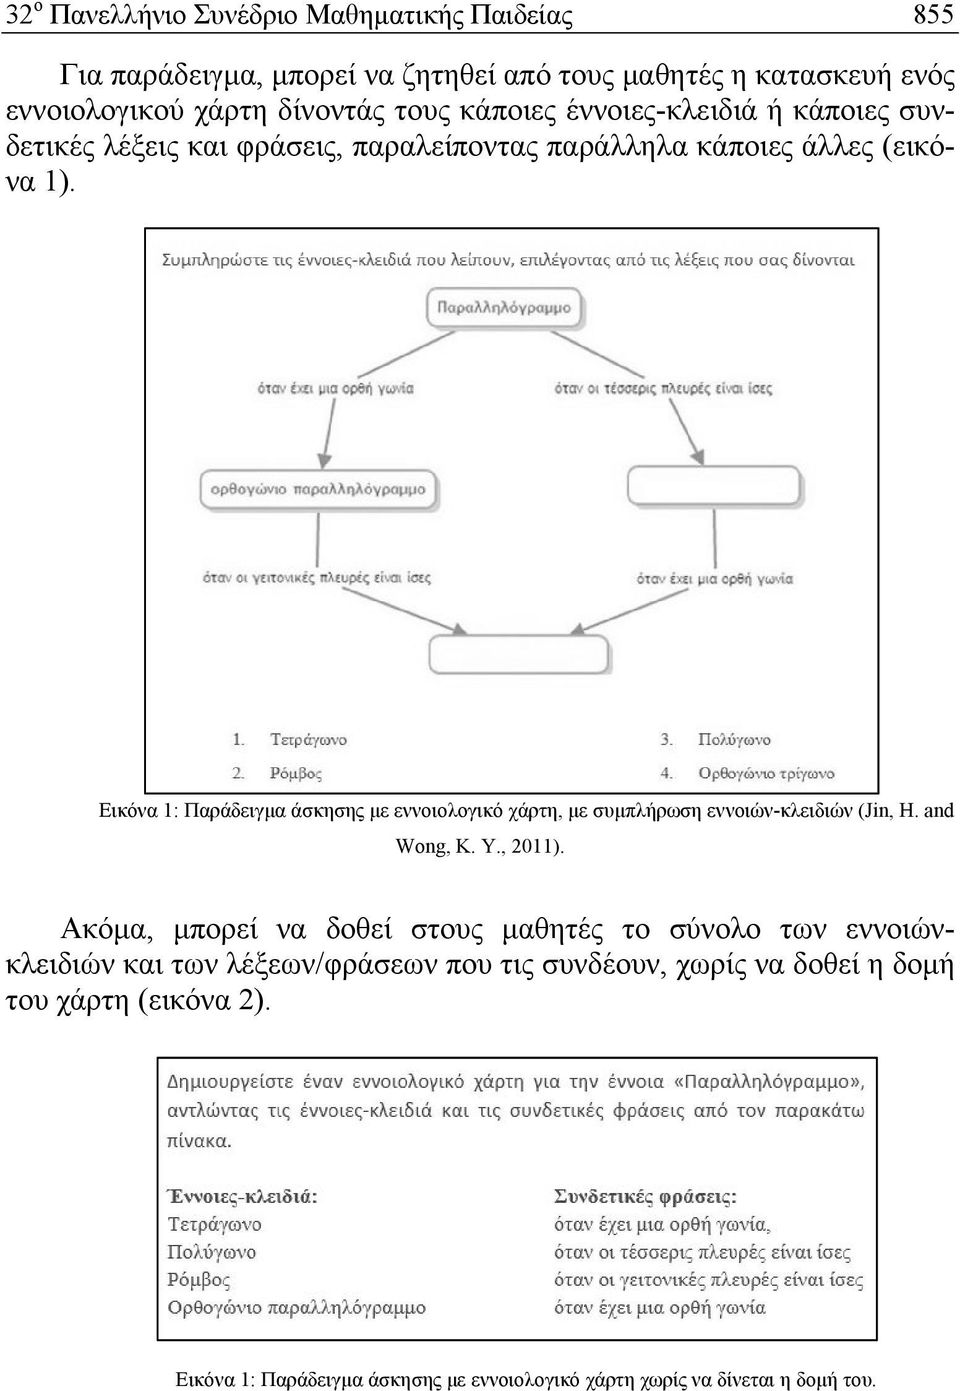 Εικόνα 1: Παράδειγμα άσκησης με εννοιολογικό χάρτη, με συμπλήρωση εννοιών-κλειδιών (Jin, H. and Wong, K. Y., 2011).